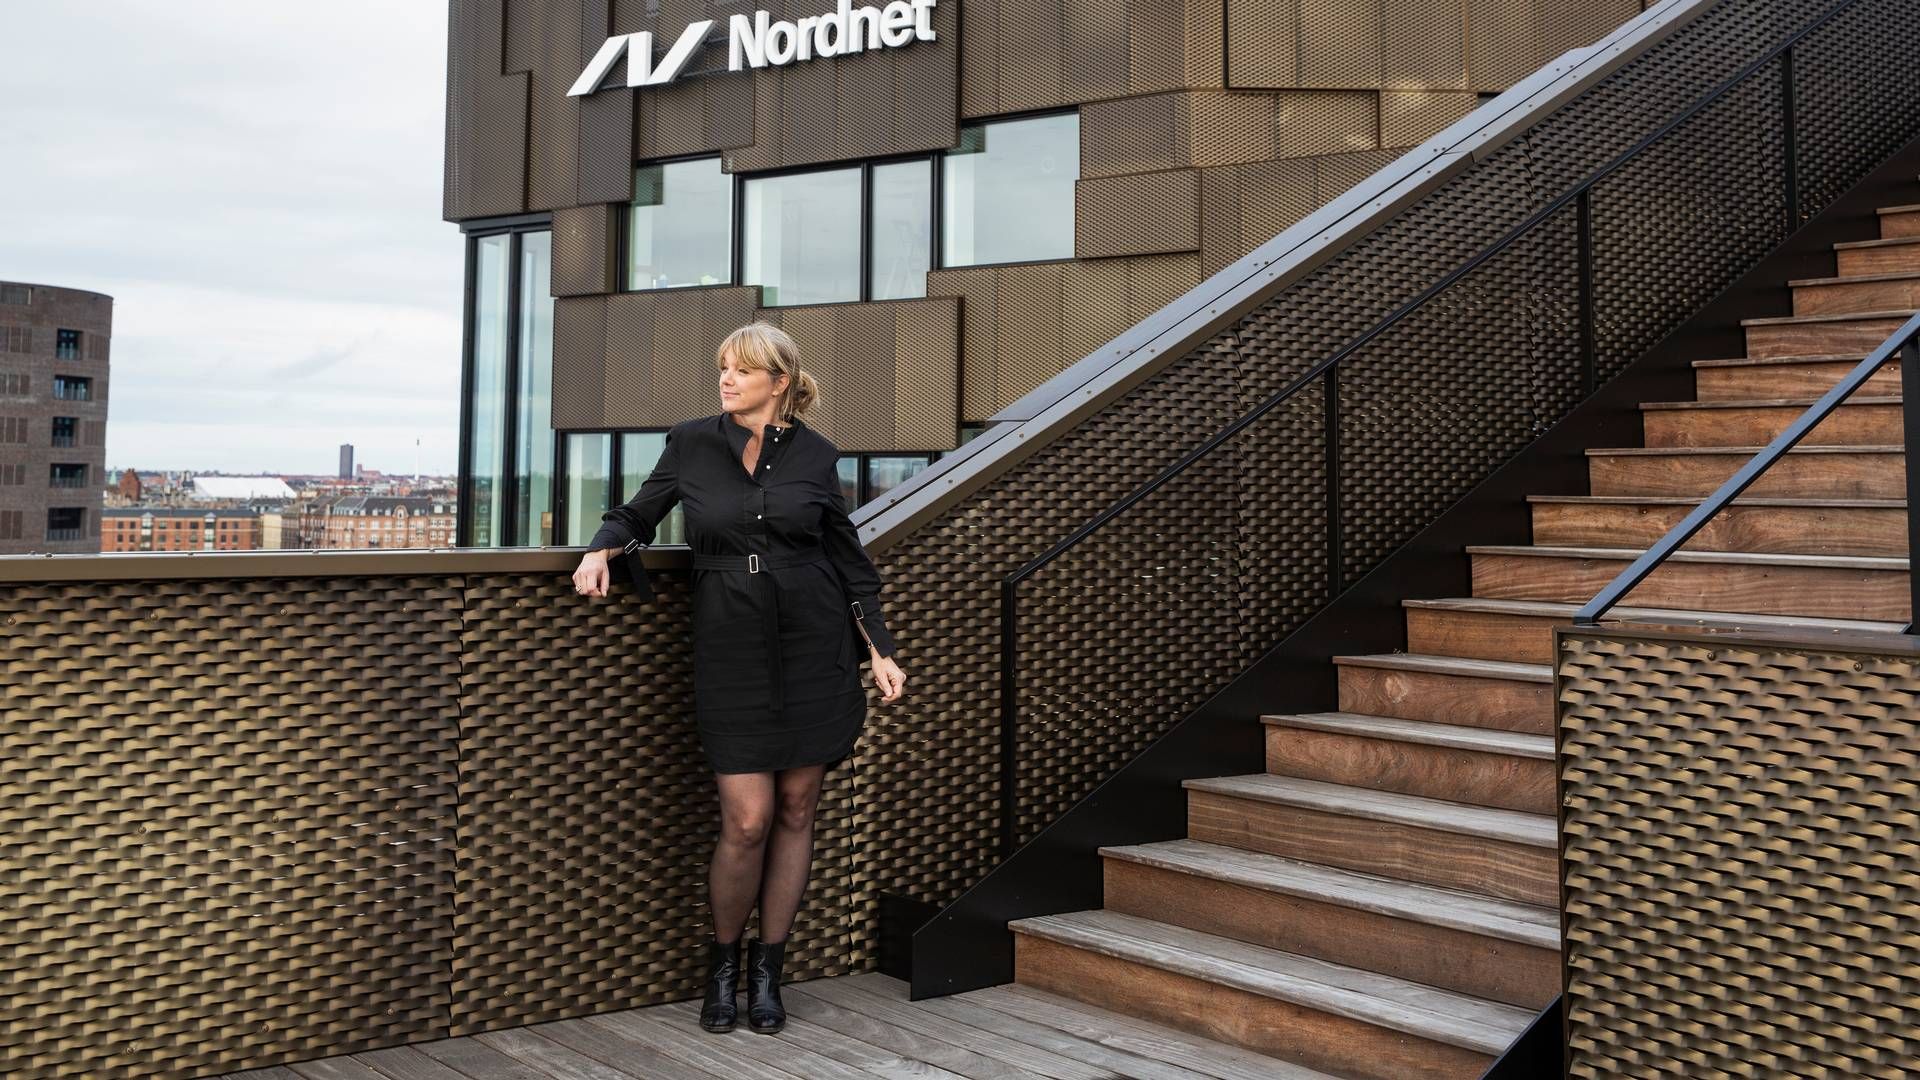 Nordnet havde i 2022 en kundetilgang på 41.500, hvilket er lavere end de foregående år, men landechef Anne Buchardt erklærer sig tilfreds. | Foto: Pr/ Nordnet